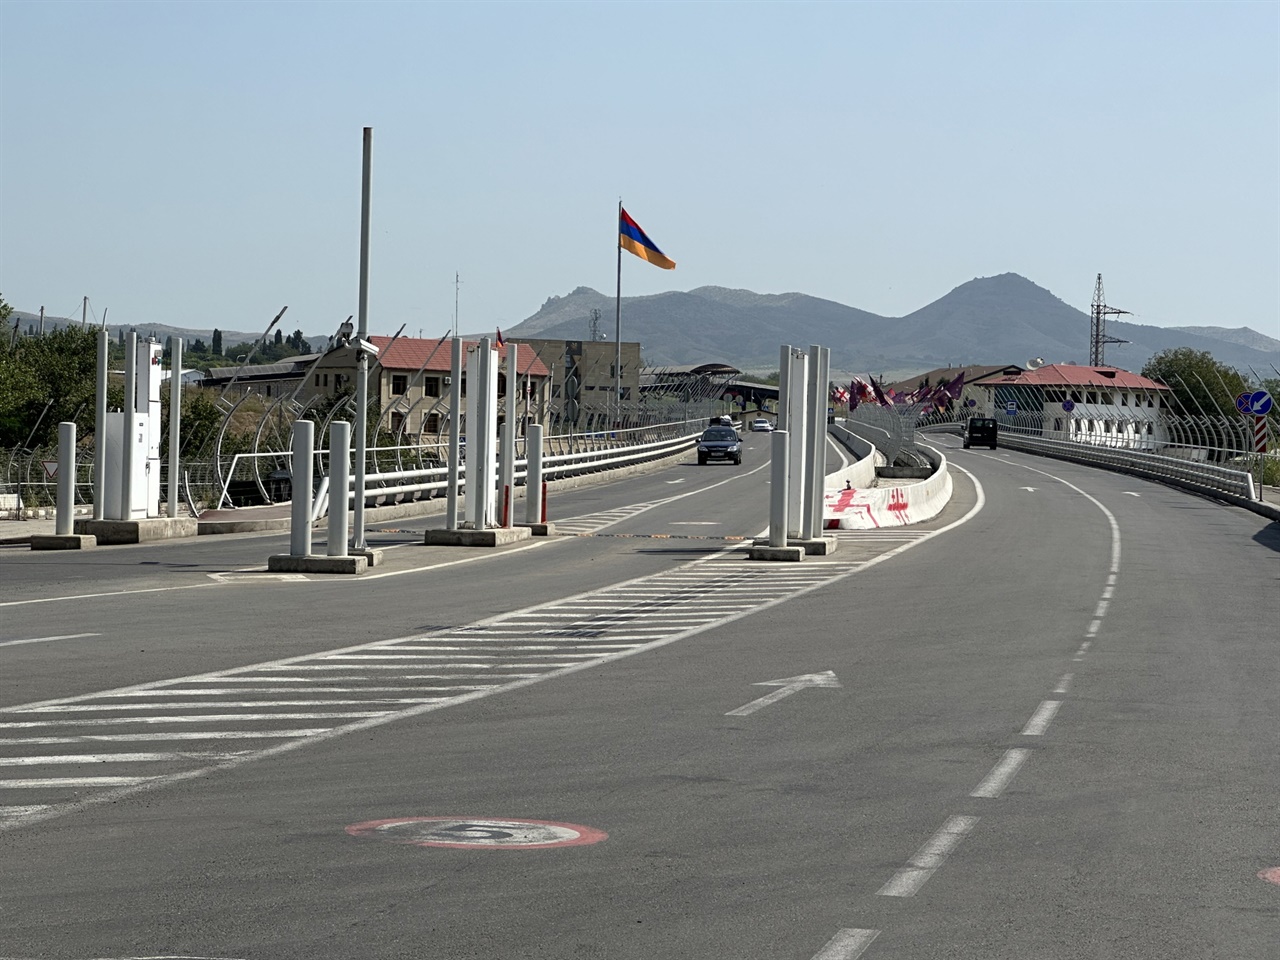 데베다강 건너 아르메니아 국기가 보인다.